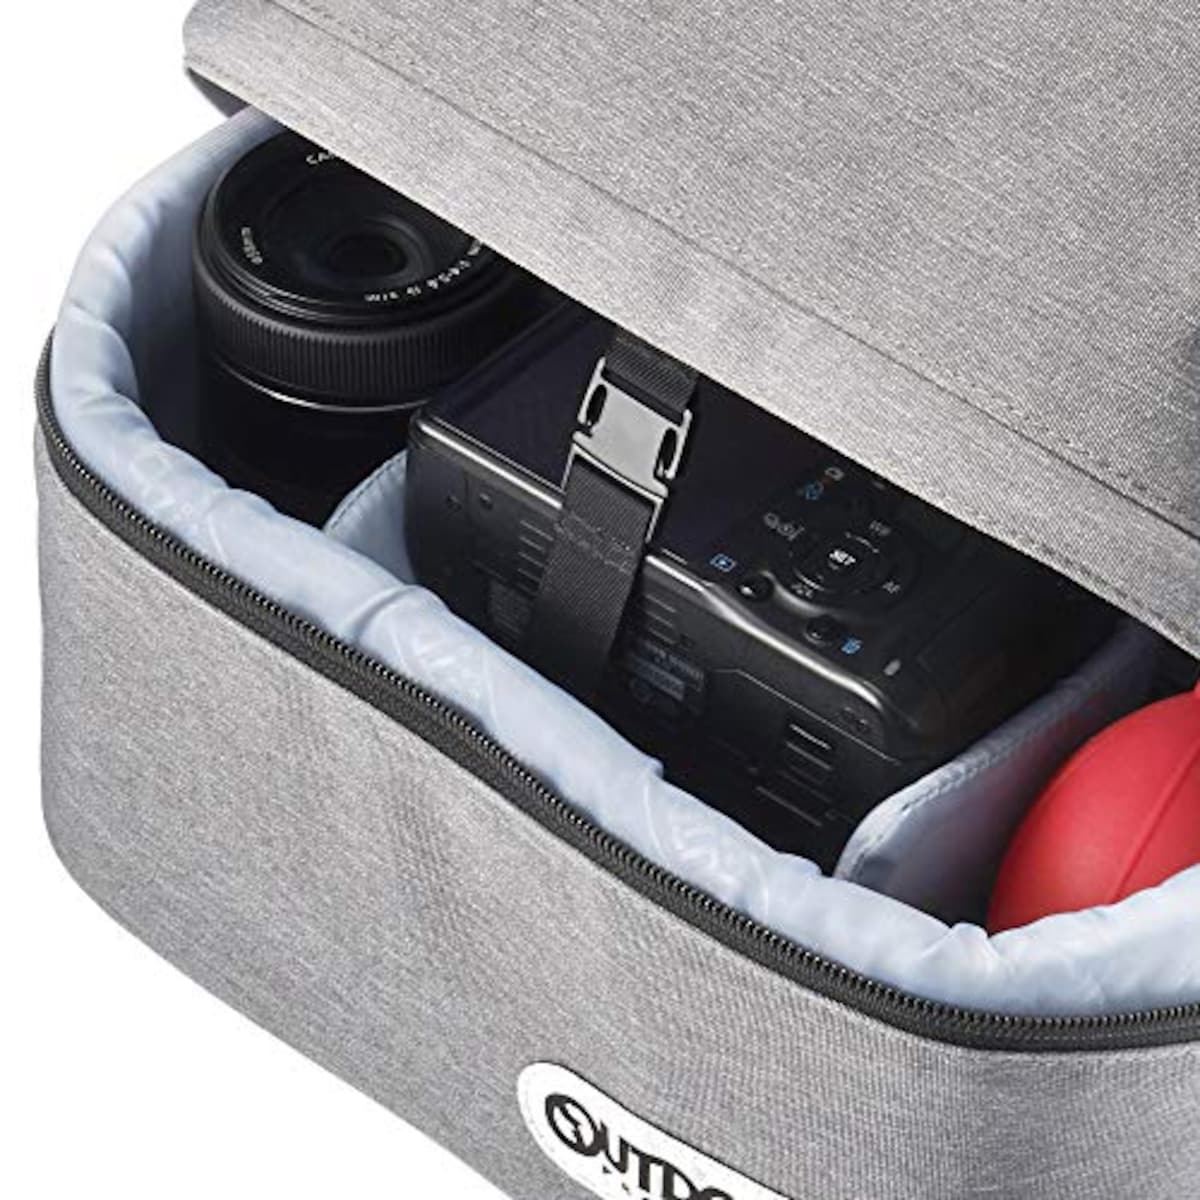  OUTDOOR PRODUCTS(アウトドアプロダクツ) カメラバッグ カメラデイパック03 普段使いにも便利な上下セパレートタイプ ヘザーグレー 2ODCDP03HG画像4 